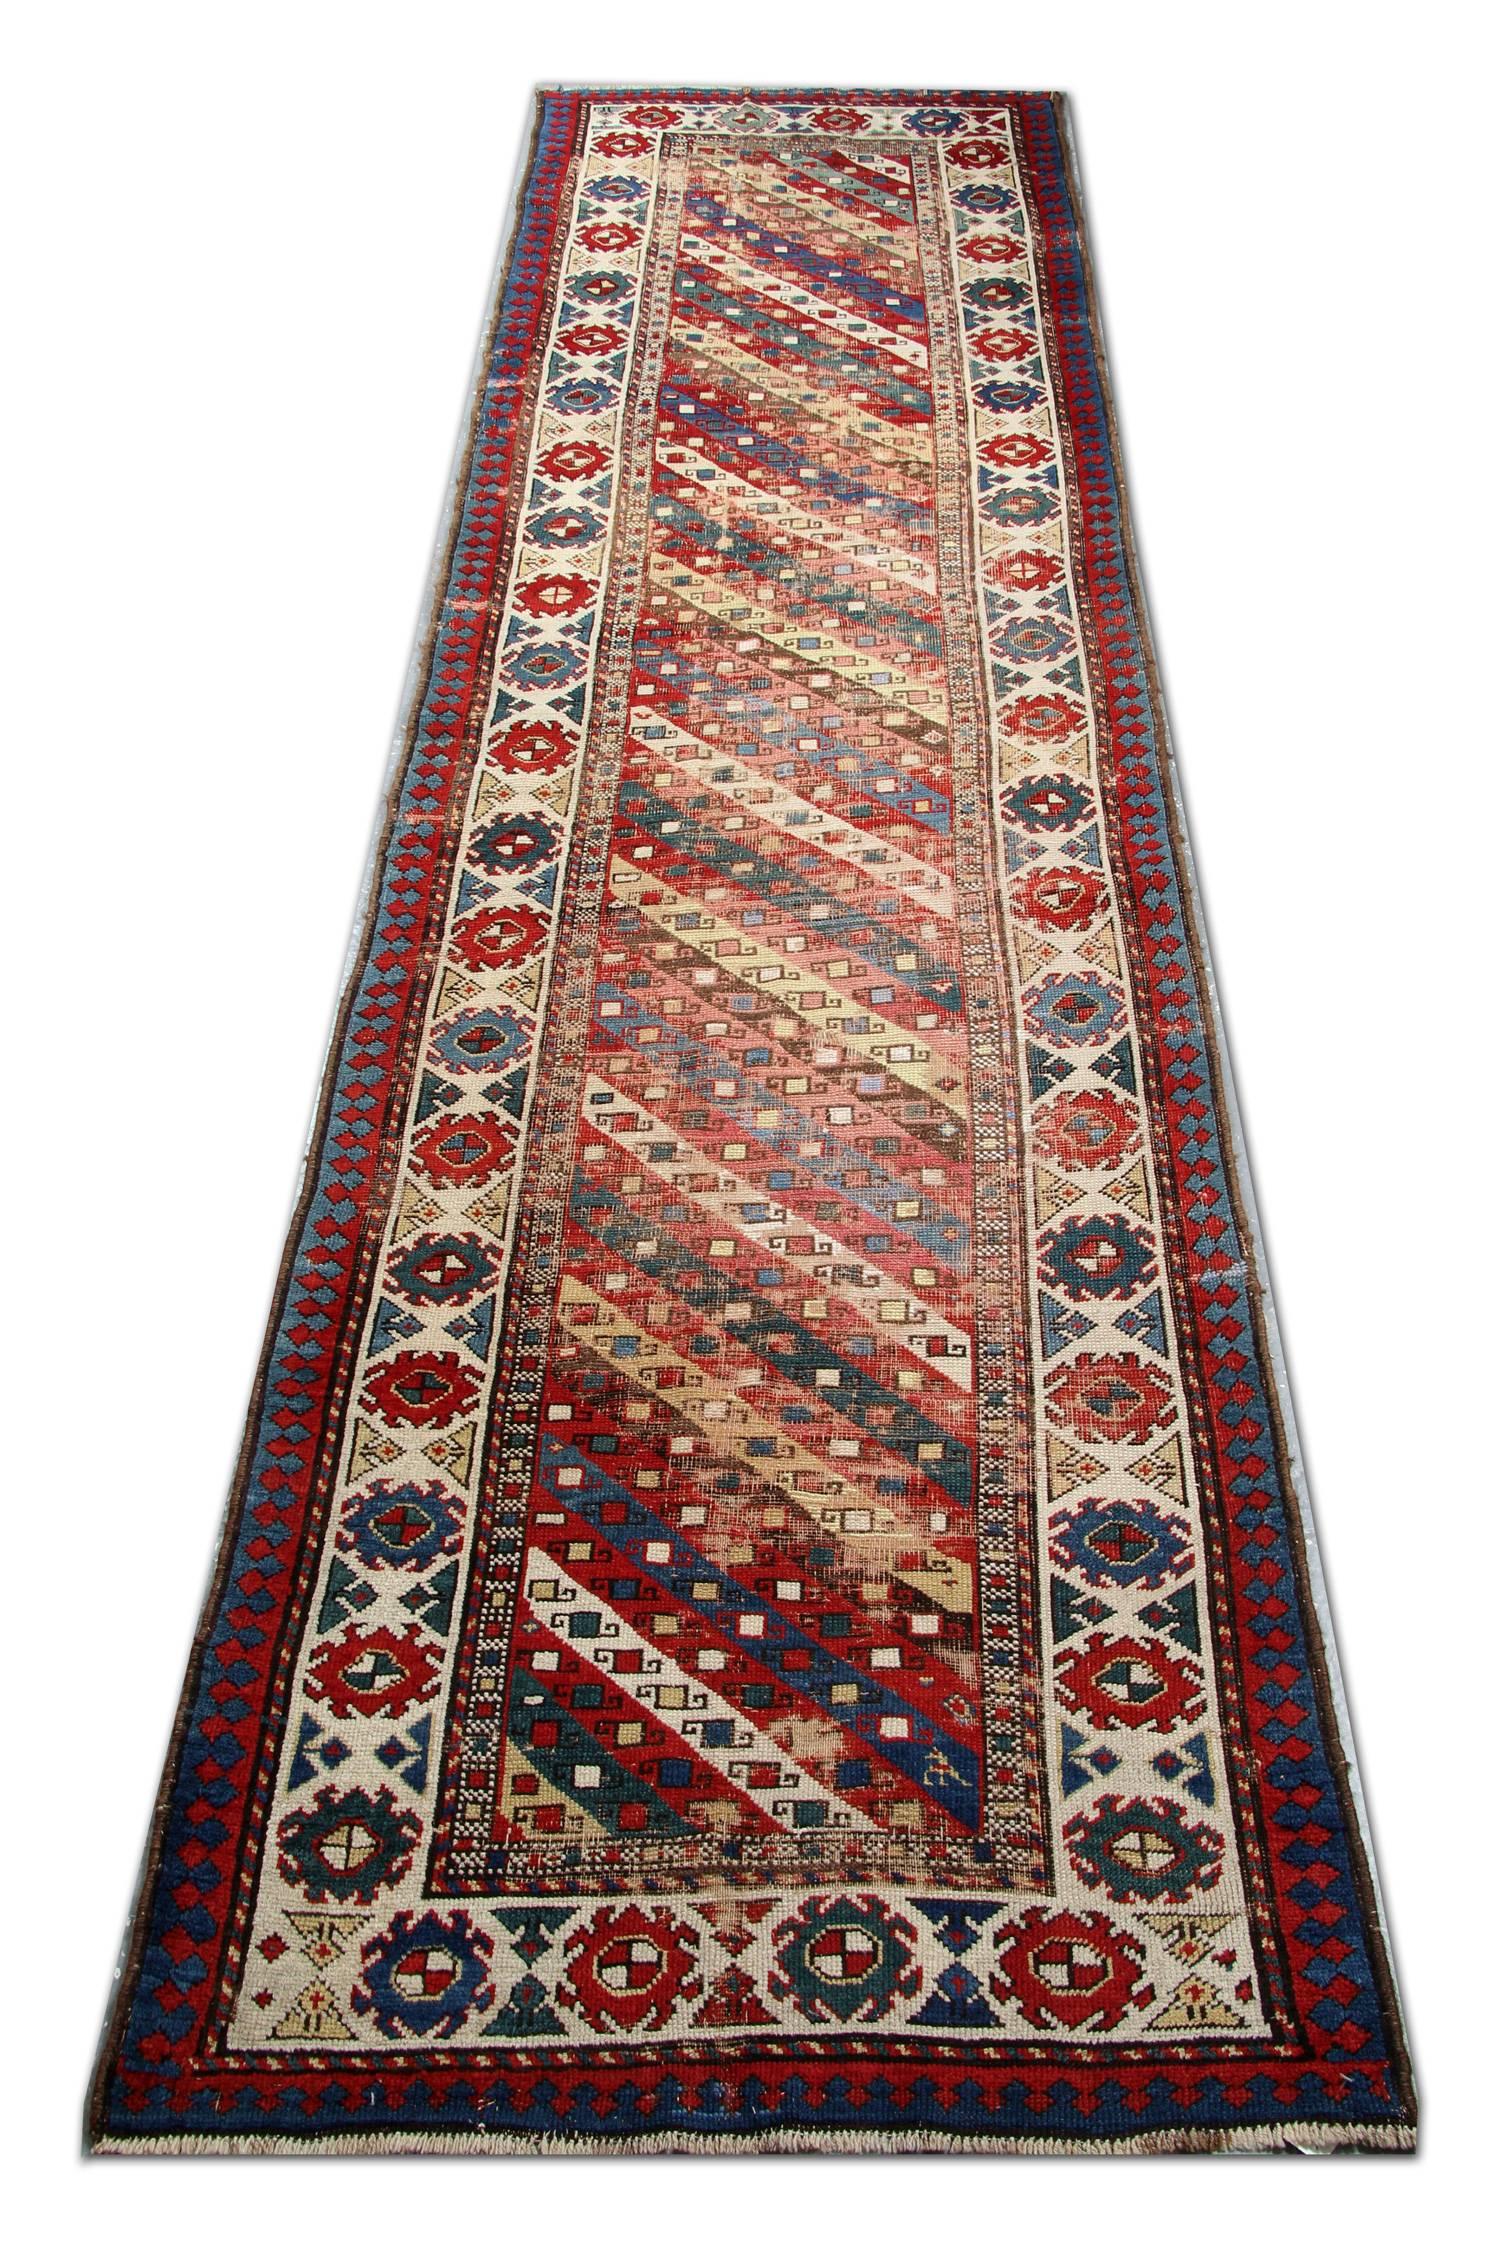 Dieser antike gestreifte Teppich von Ganjeh ist ein handgefertigter Orientteppich, der aus nomadischen Traditionen hervorgegangen ist. Er zeichnet sich durch eine spektakuläre Anordnung von modularen Streifen und klassischen Randmotiven aus, die